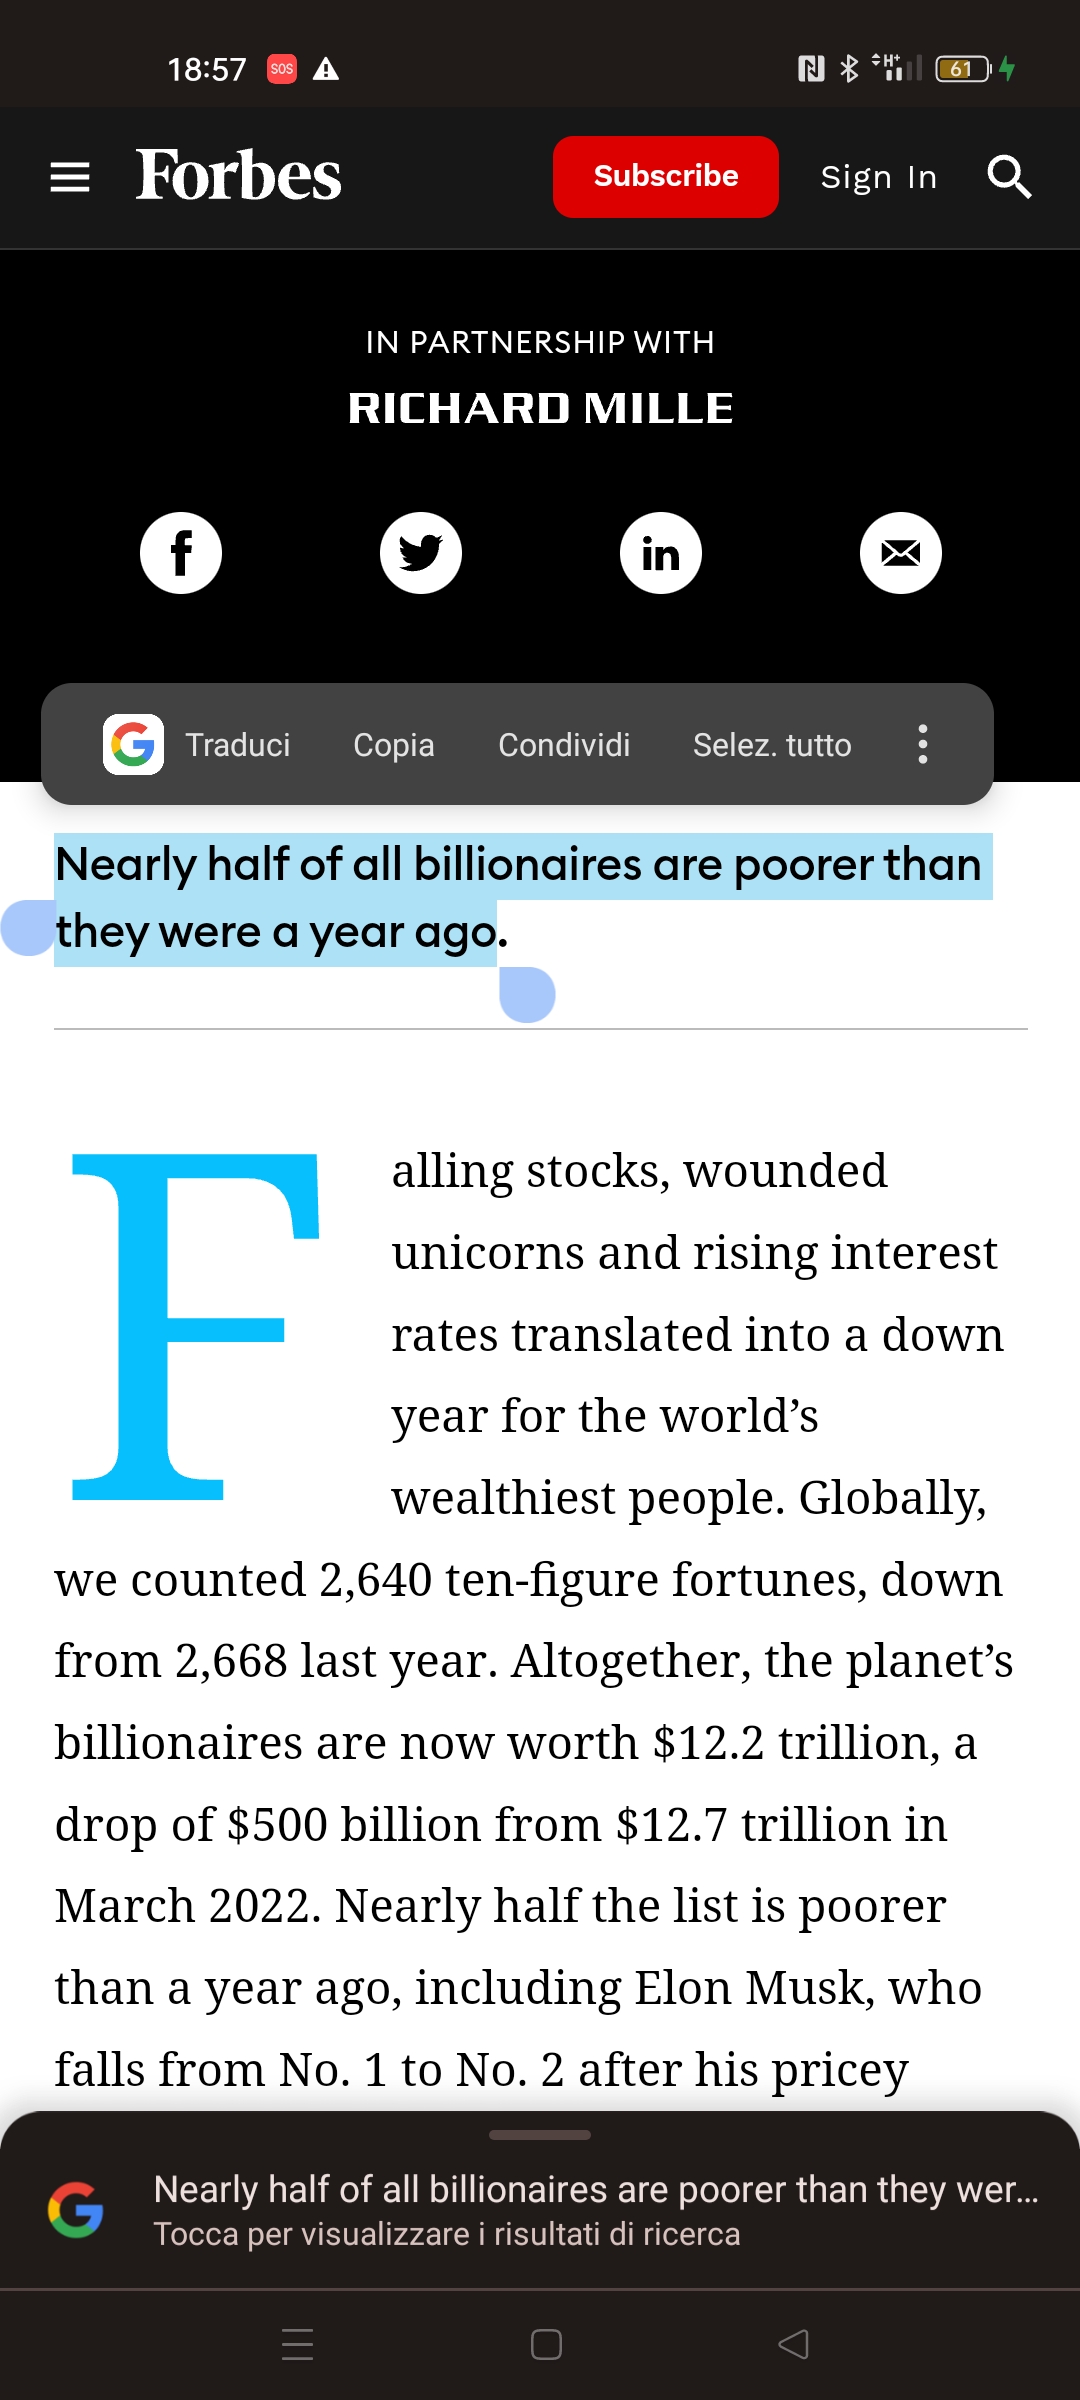 Selezione porzione di testo da articolo Forbes